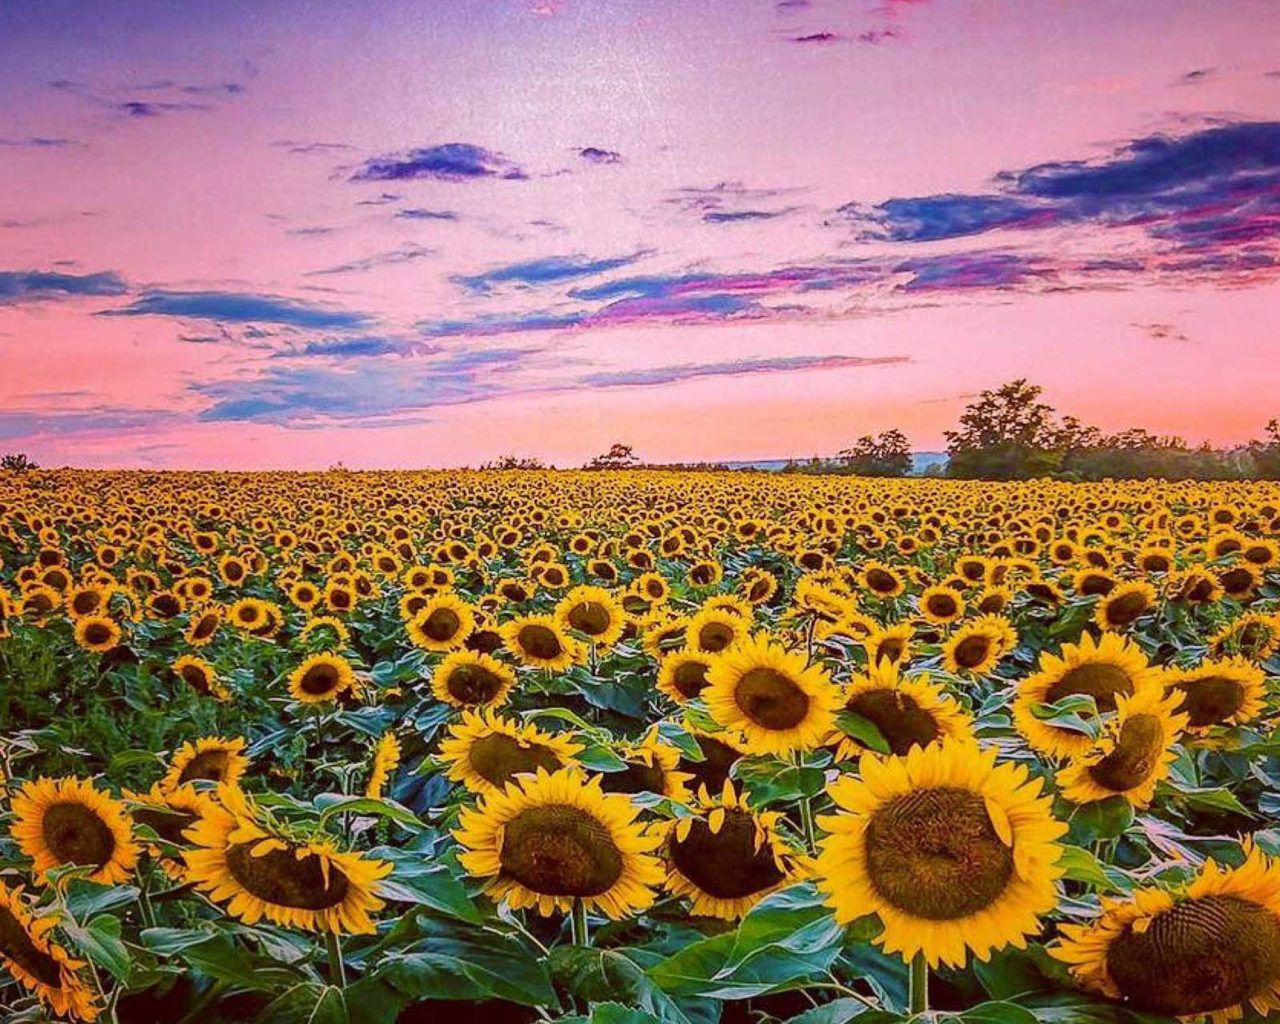 A sunflower field at dusk - Sunflower, summer